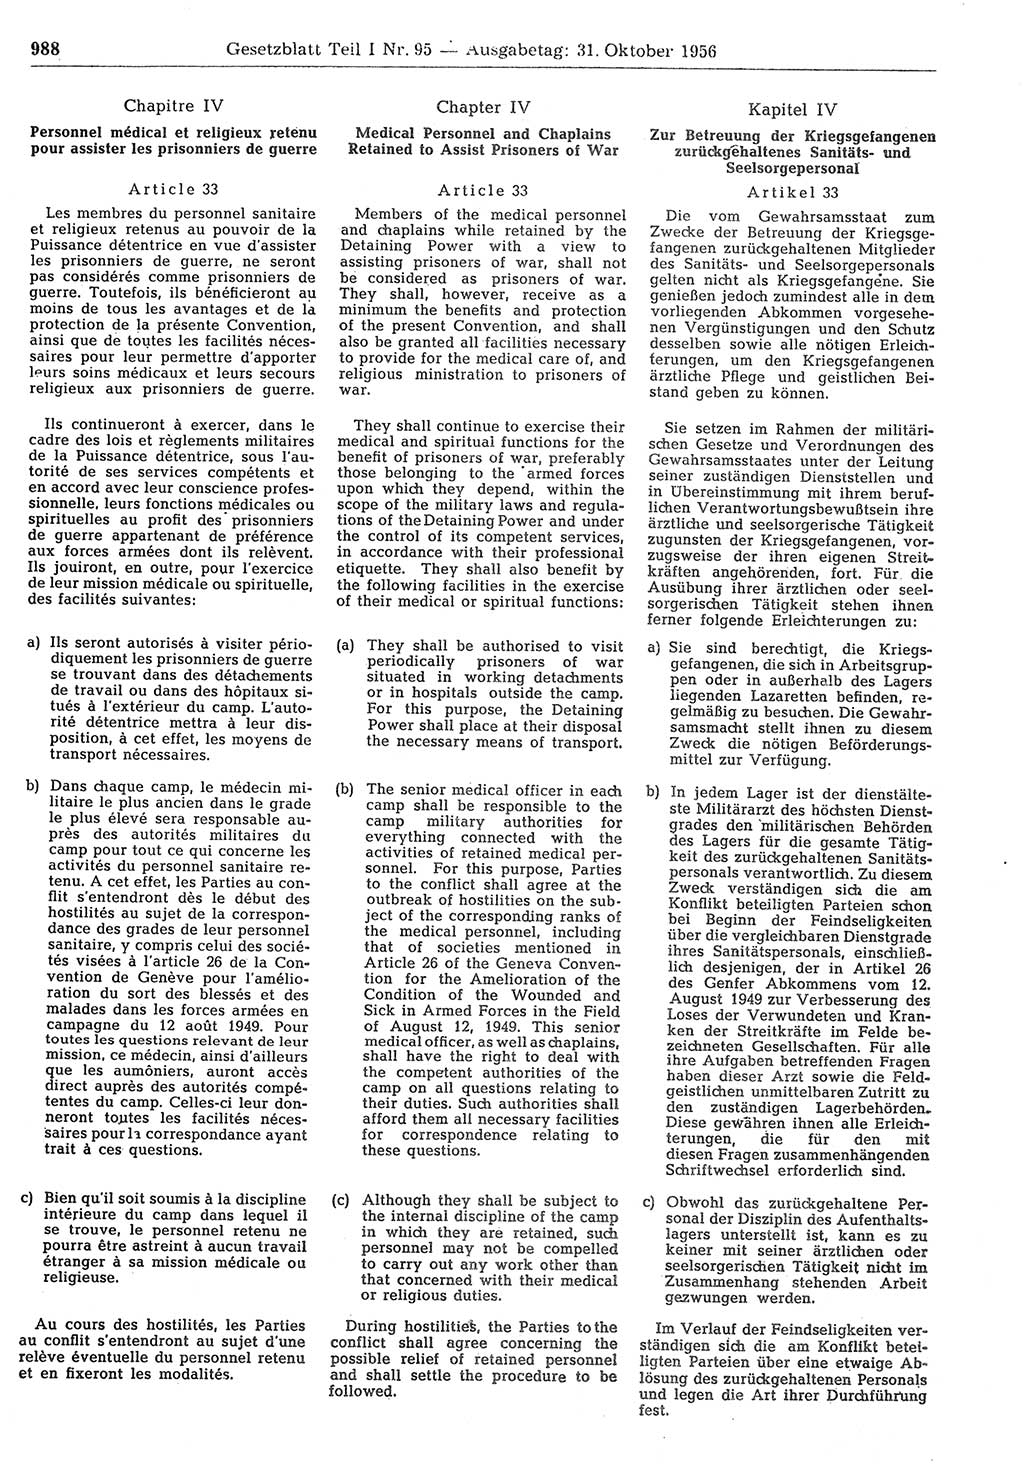 Gesetzblatt (GBl.) der Deutschen Demokratischen Republik (DDR) Teil Ⅰ 1956, Seite 988 (GBl. DDR Ⅰ 1956, S. 988)